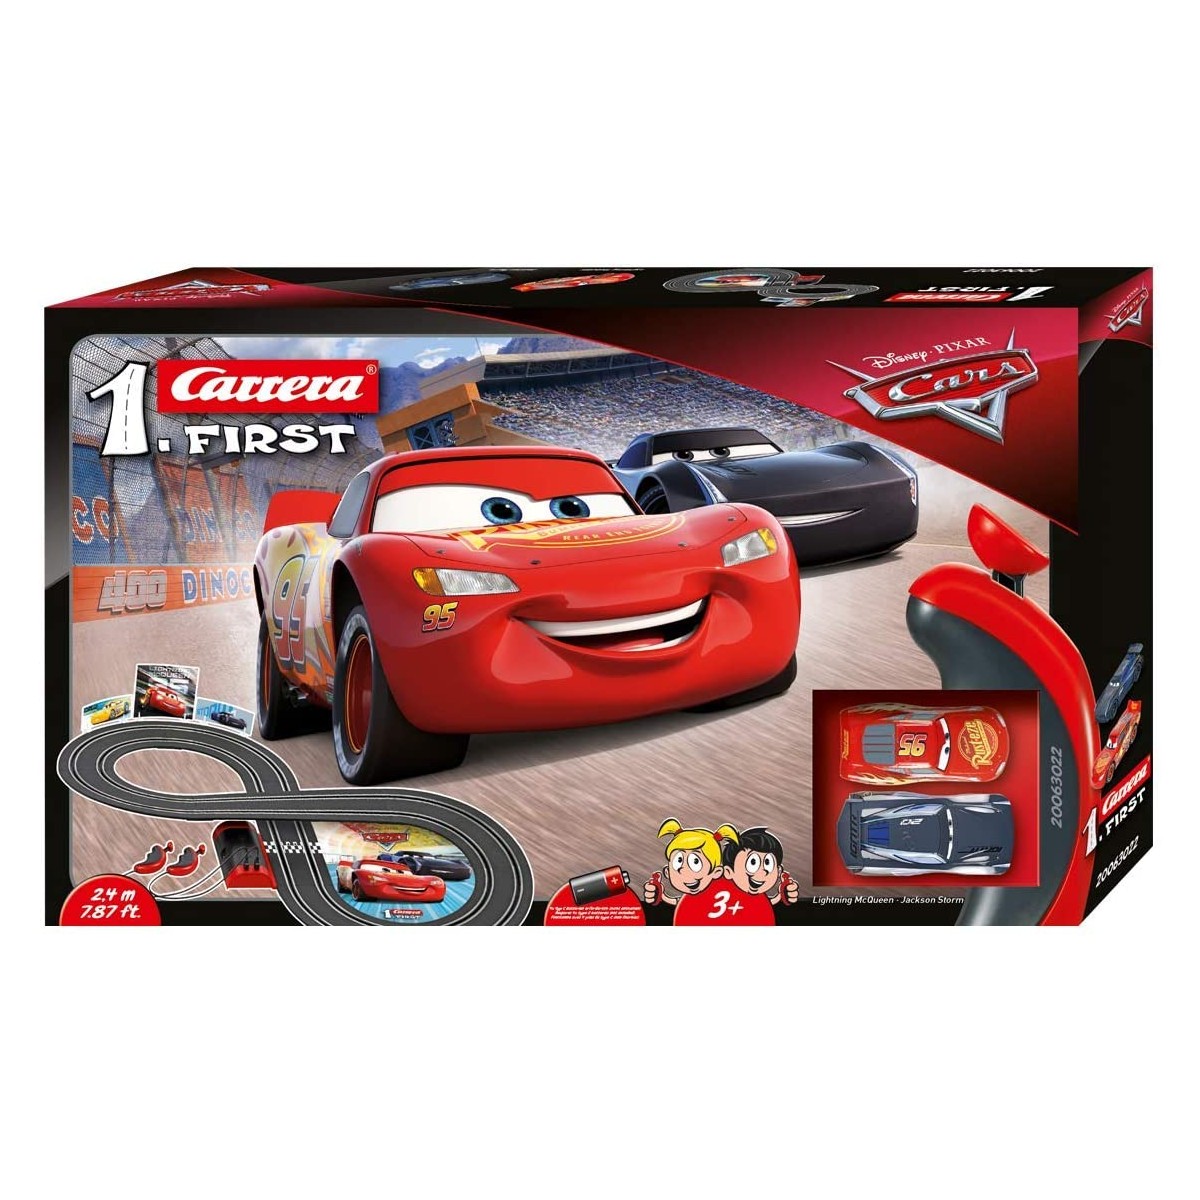 Pista da corsa Cars Disney 1 first - Carrera